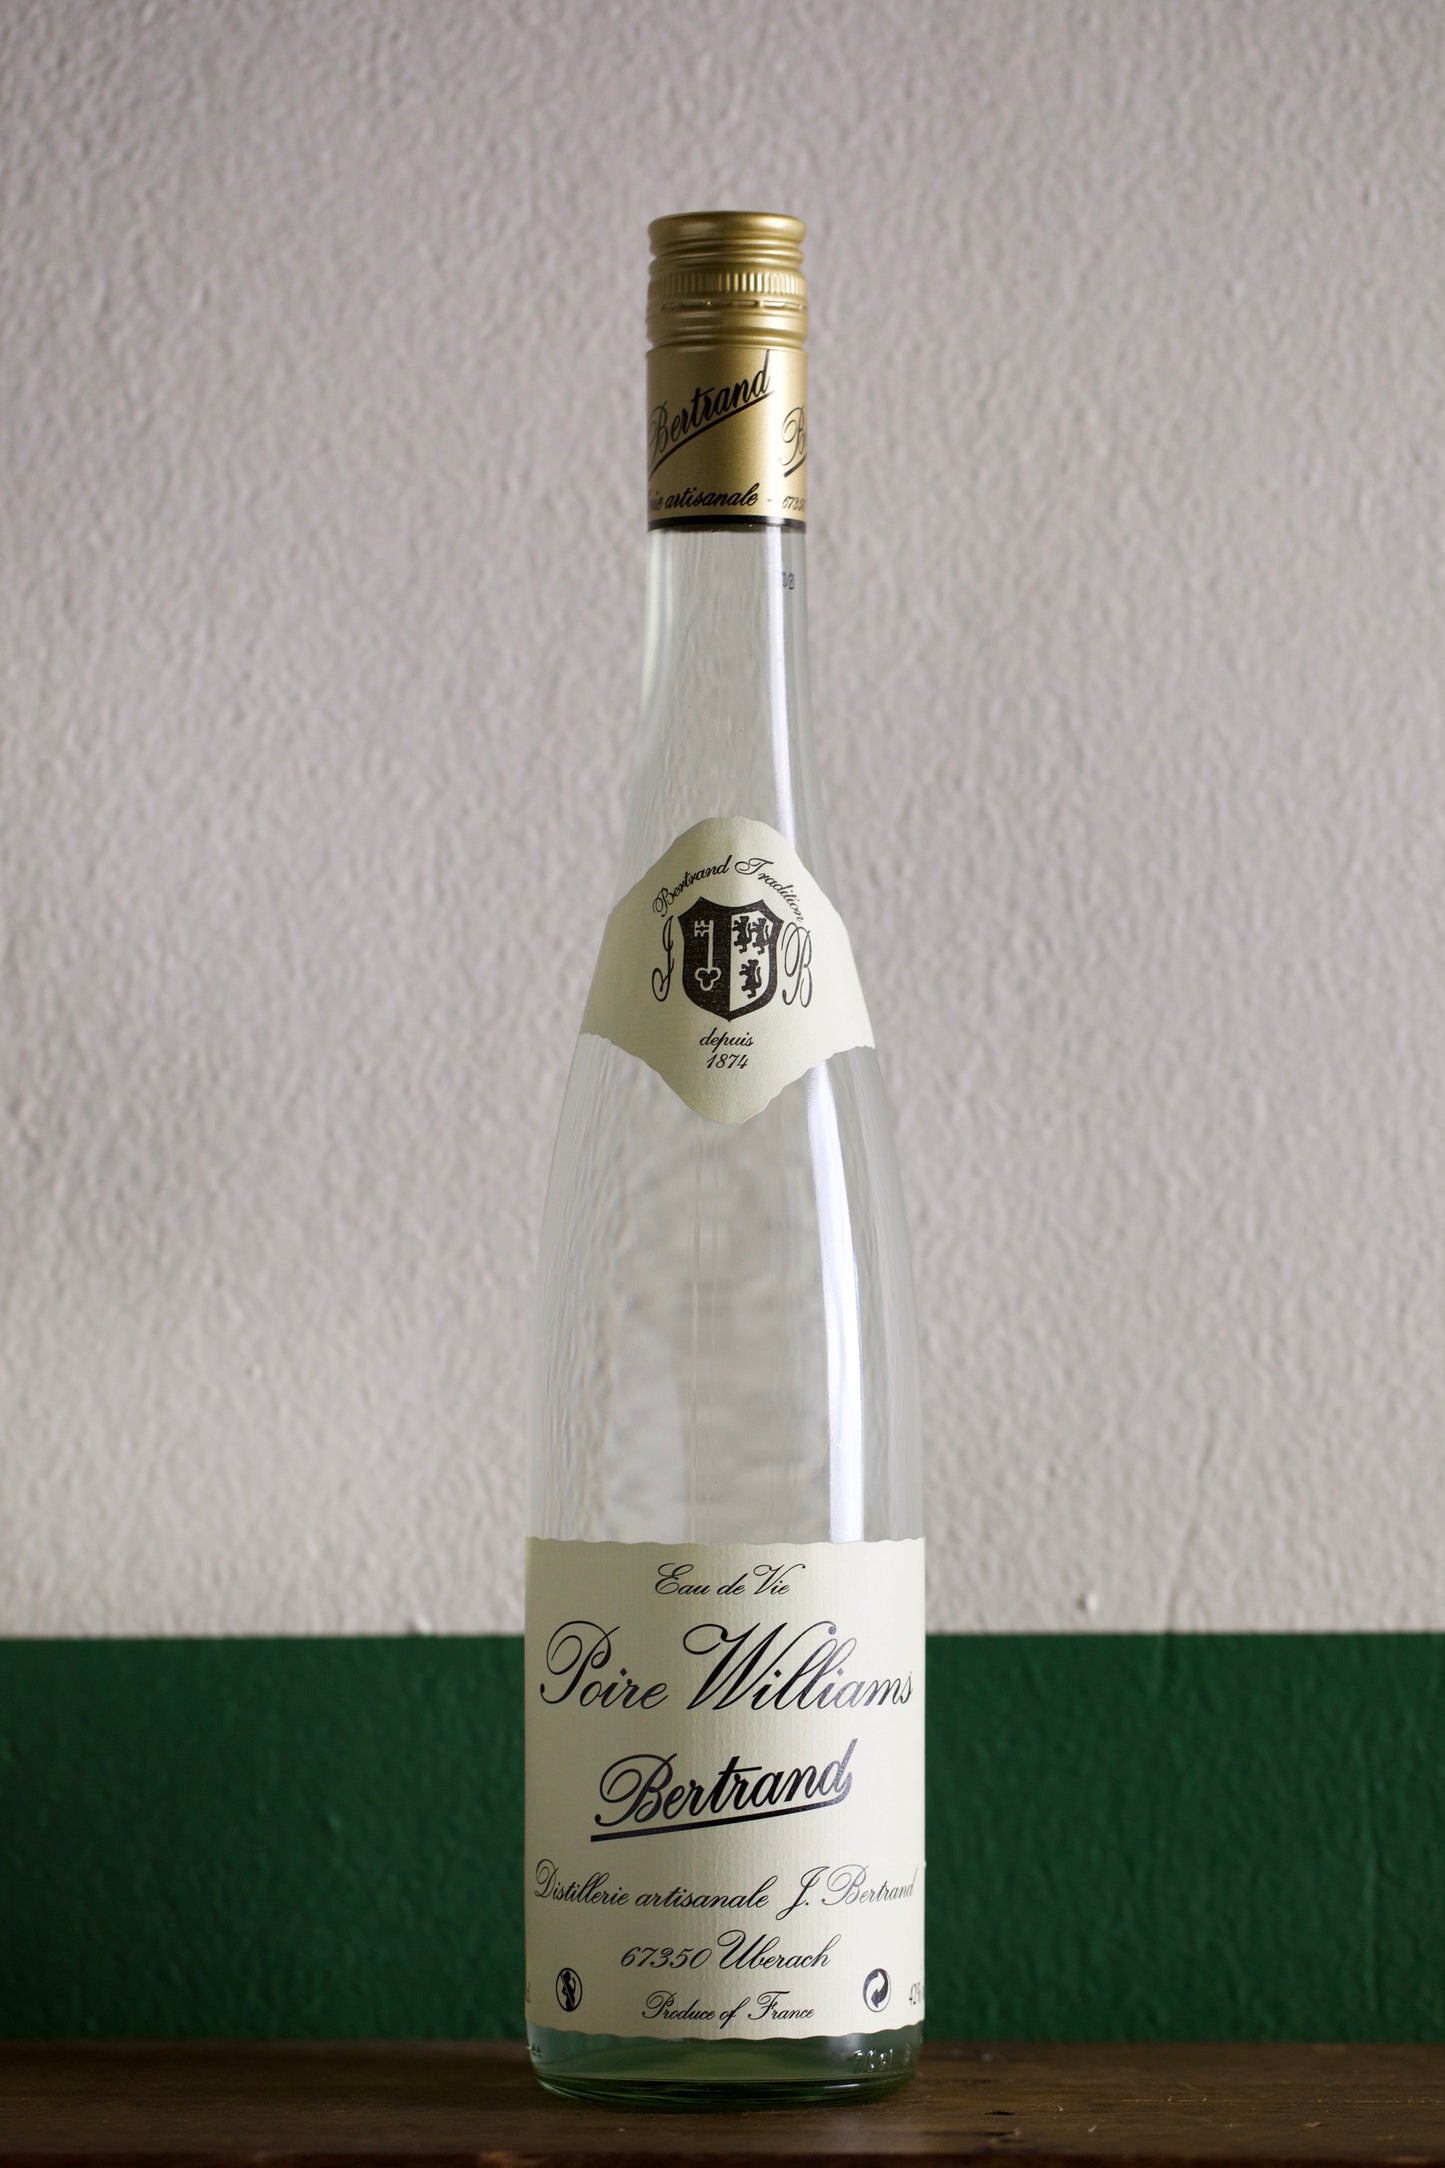 Bottle of Poire Williams 'Bertrand' Eau de Vie 700ml